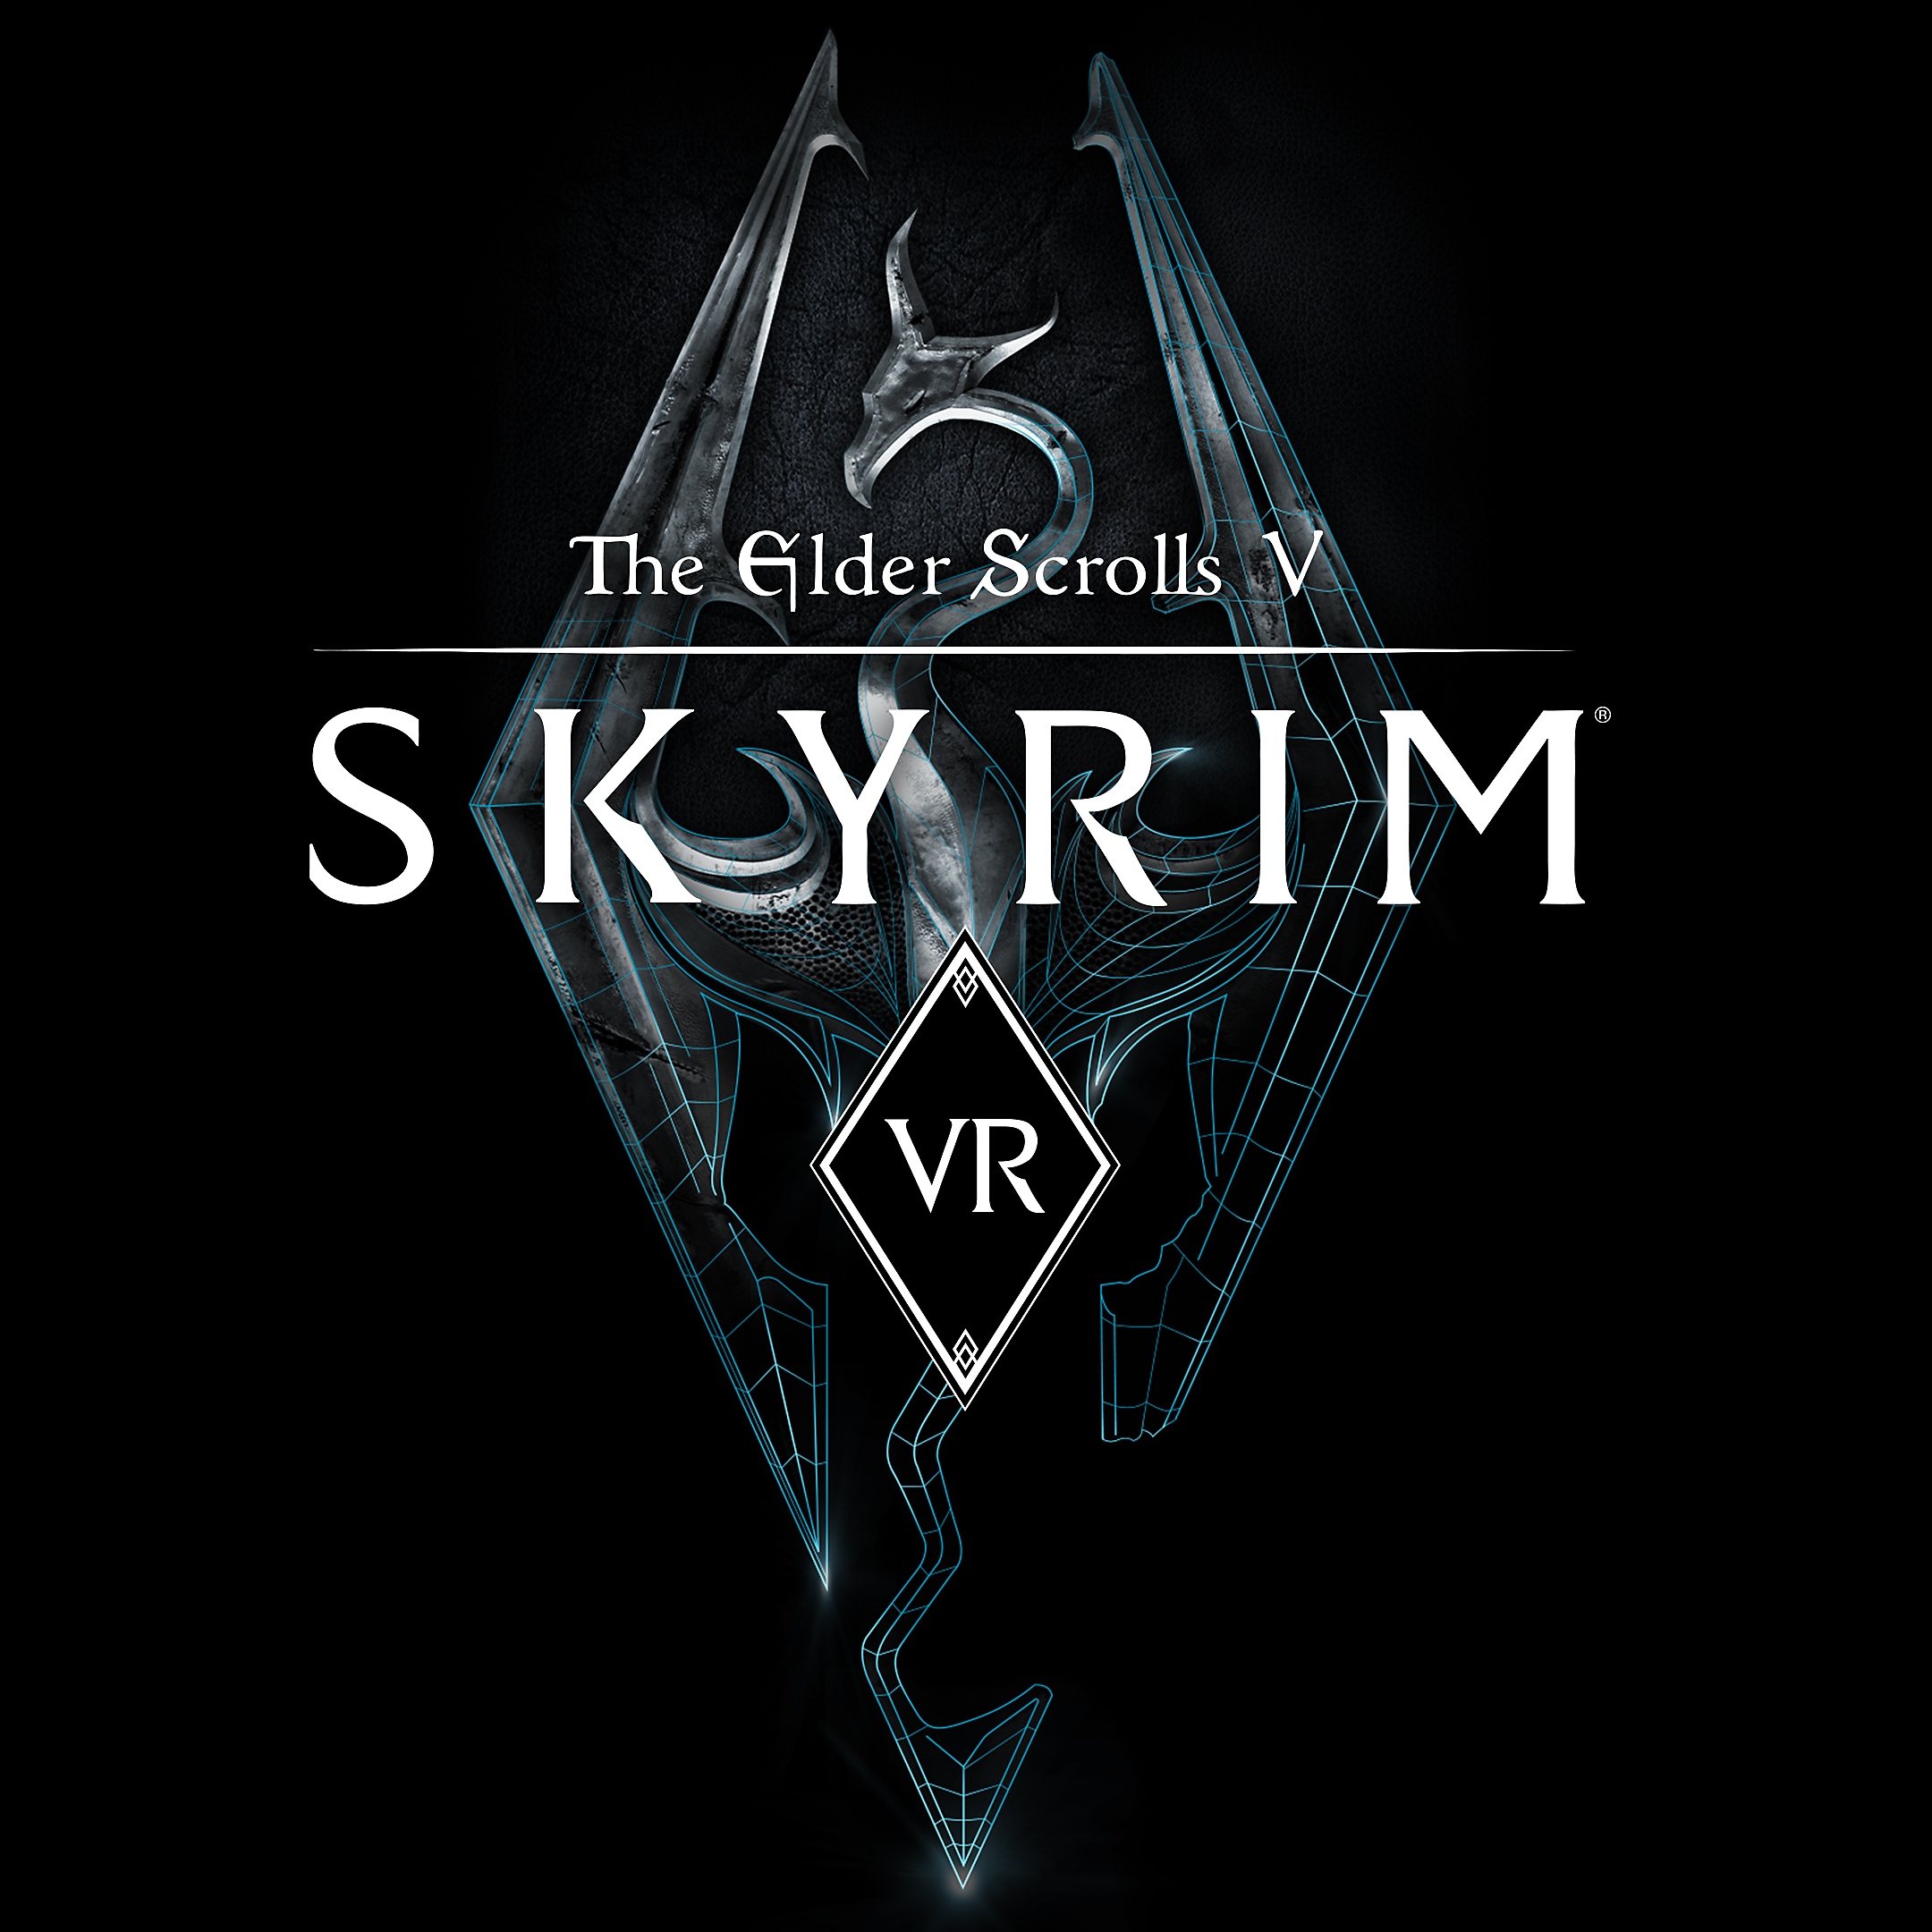 The Elder Scrolls V: Skyrim VR – packshot